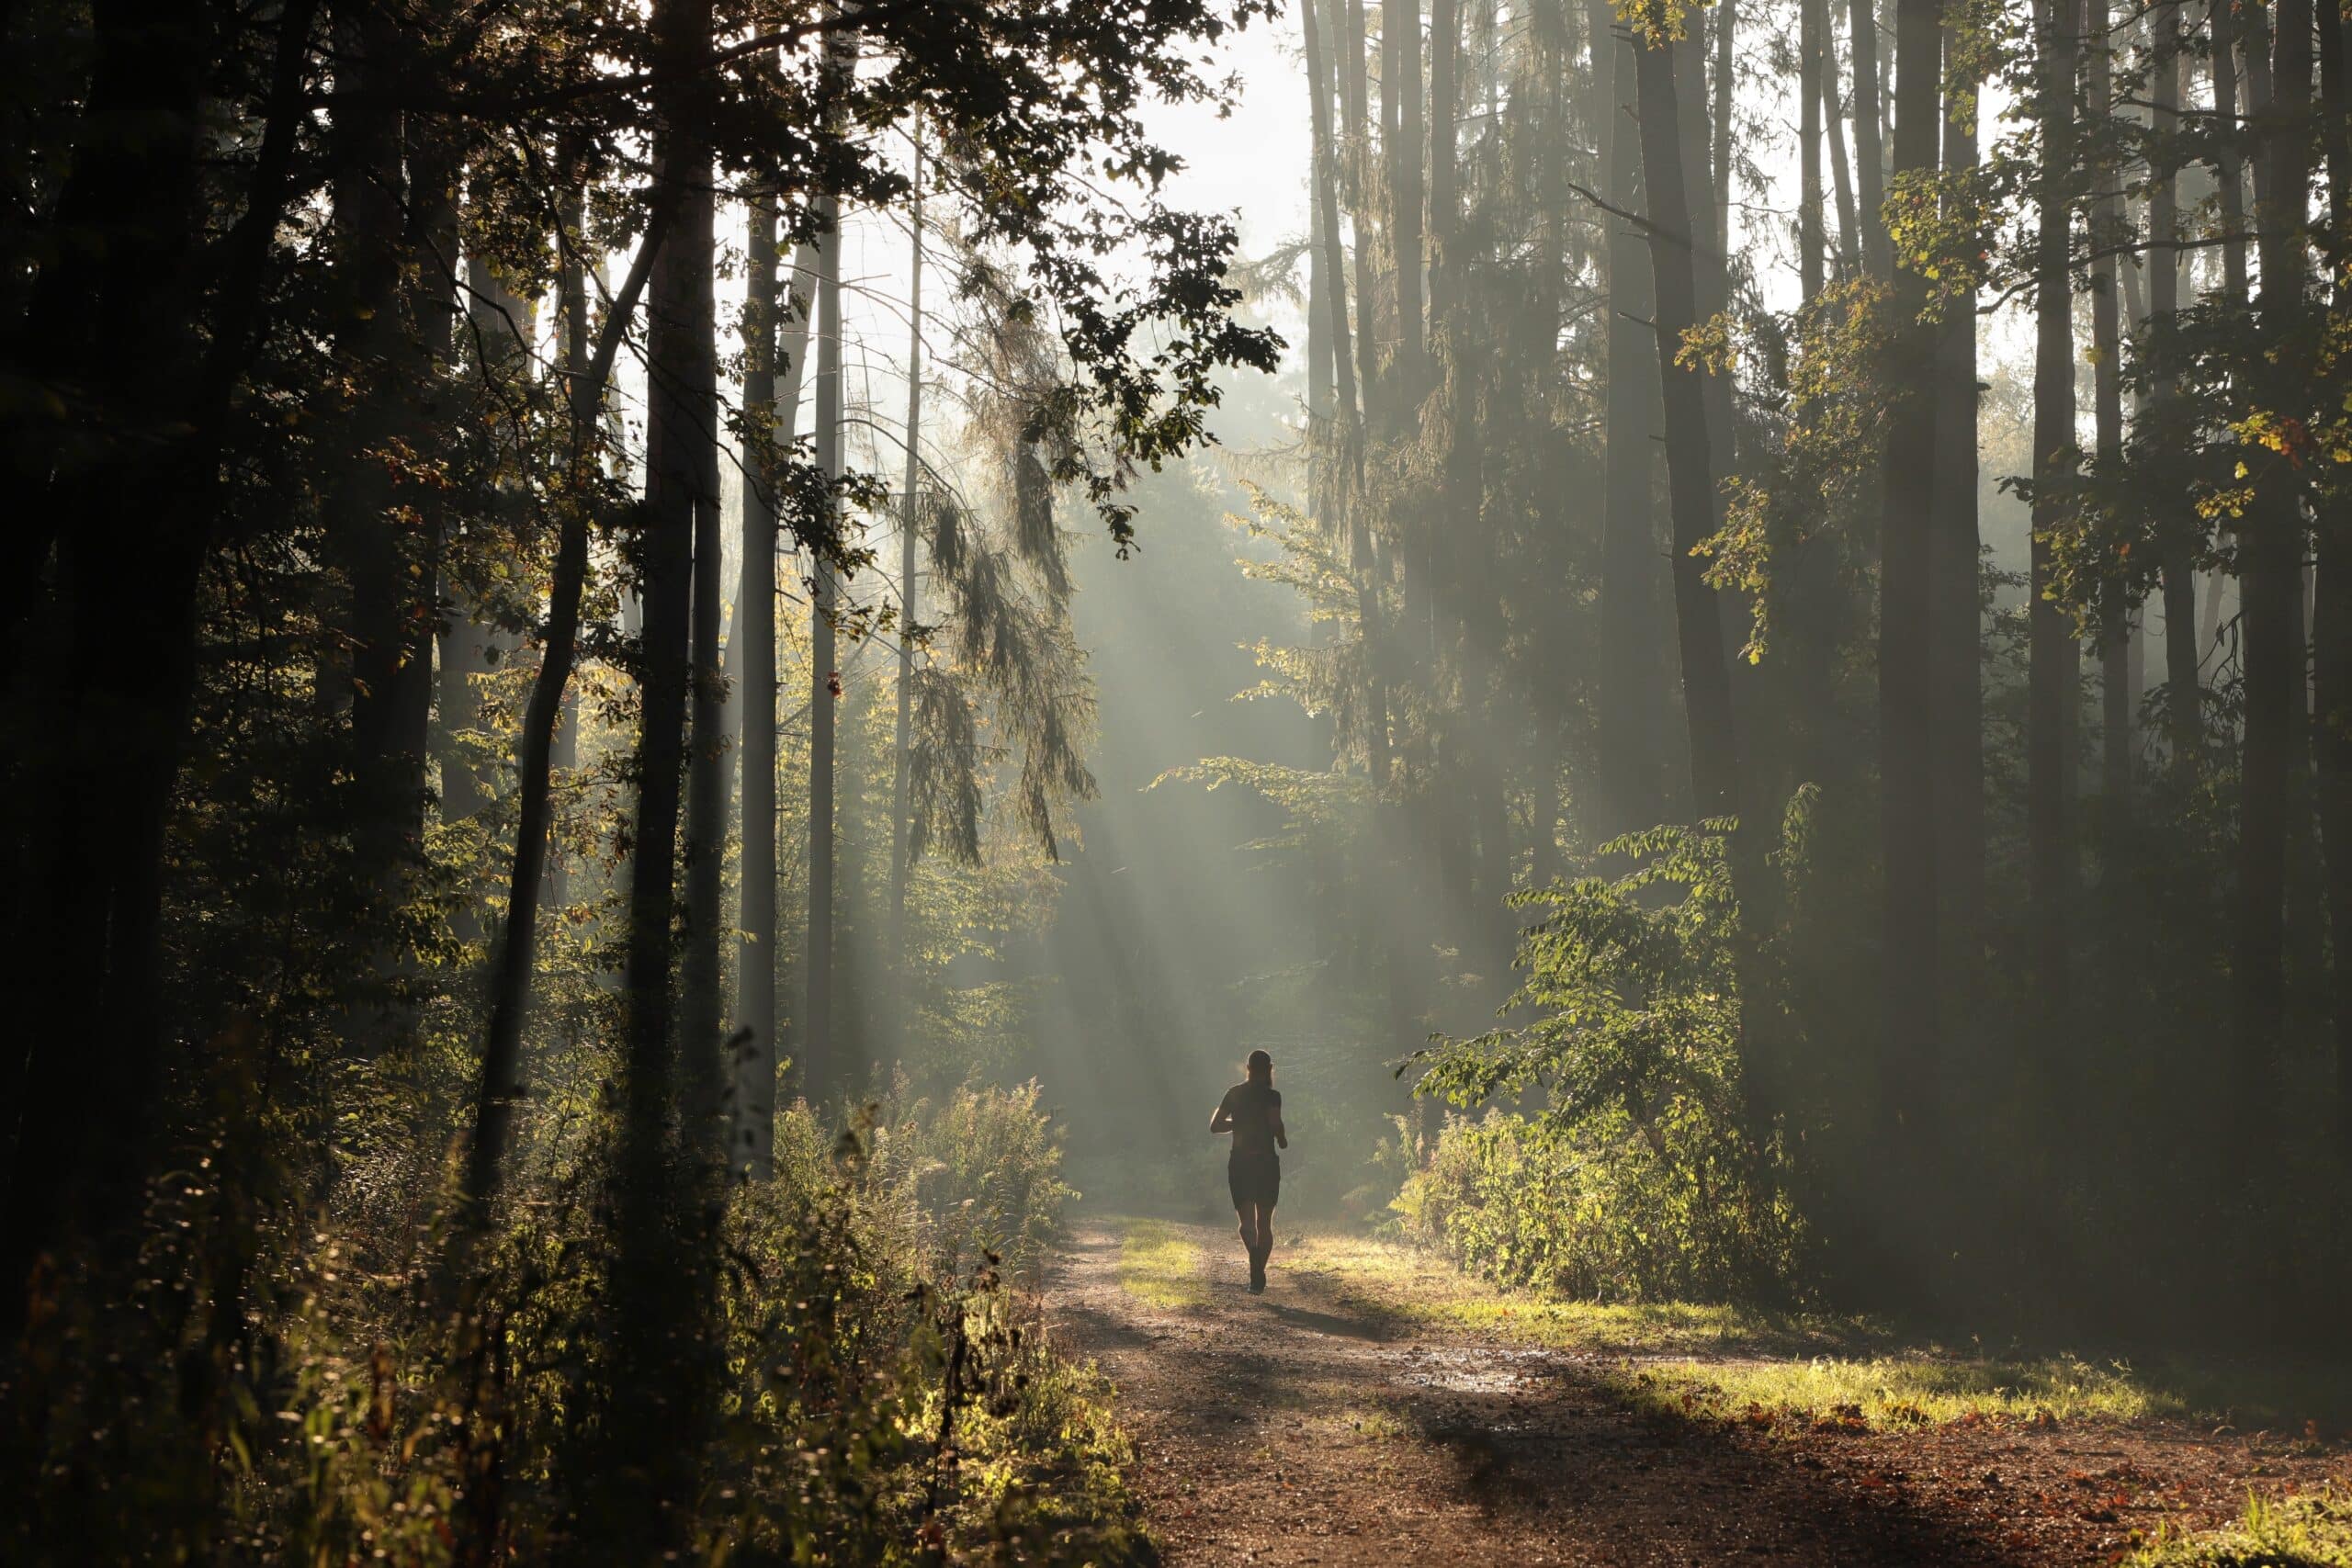 A man runs along a forest path on a foggy morning